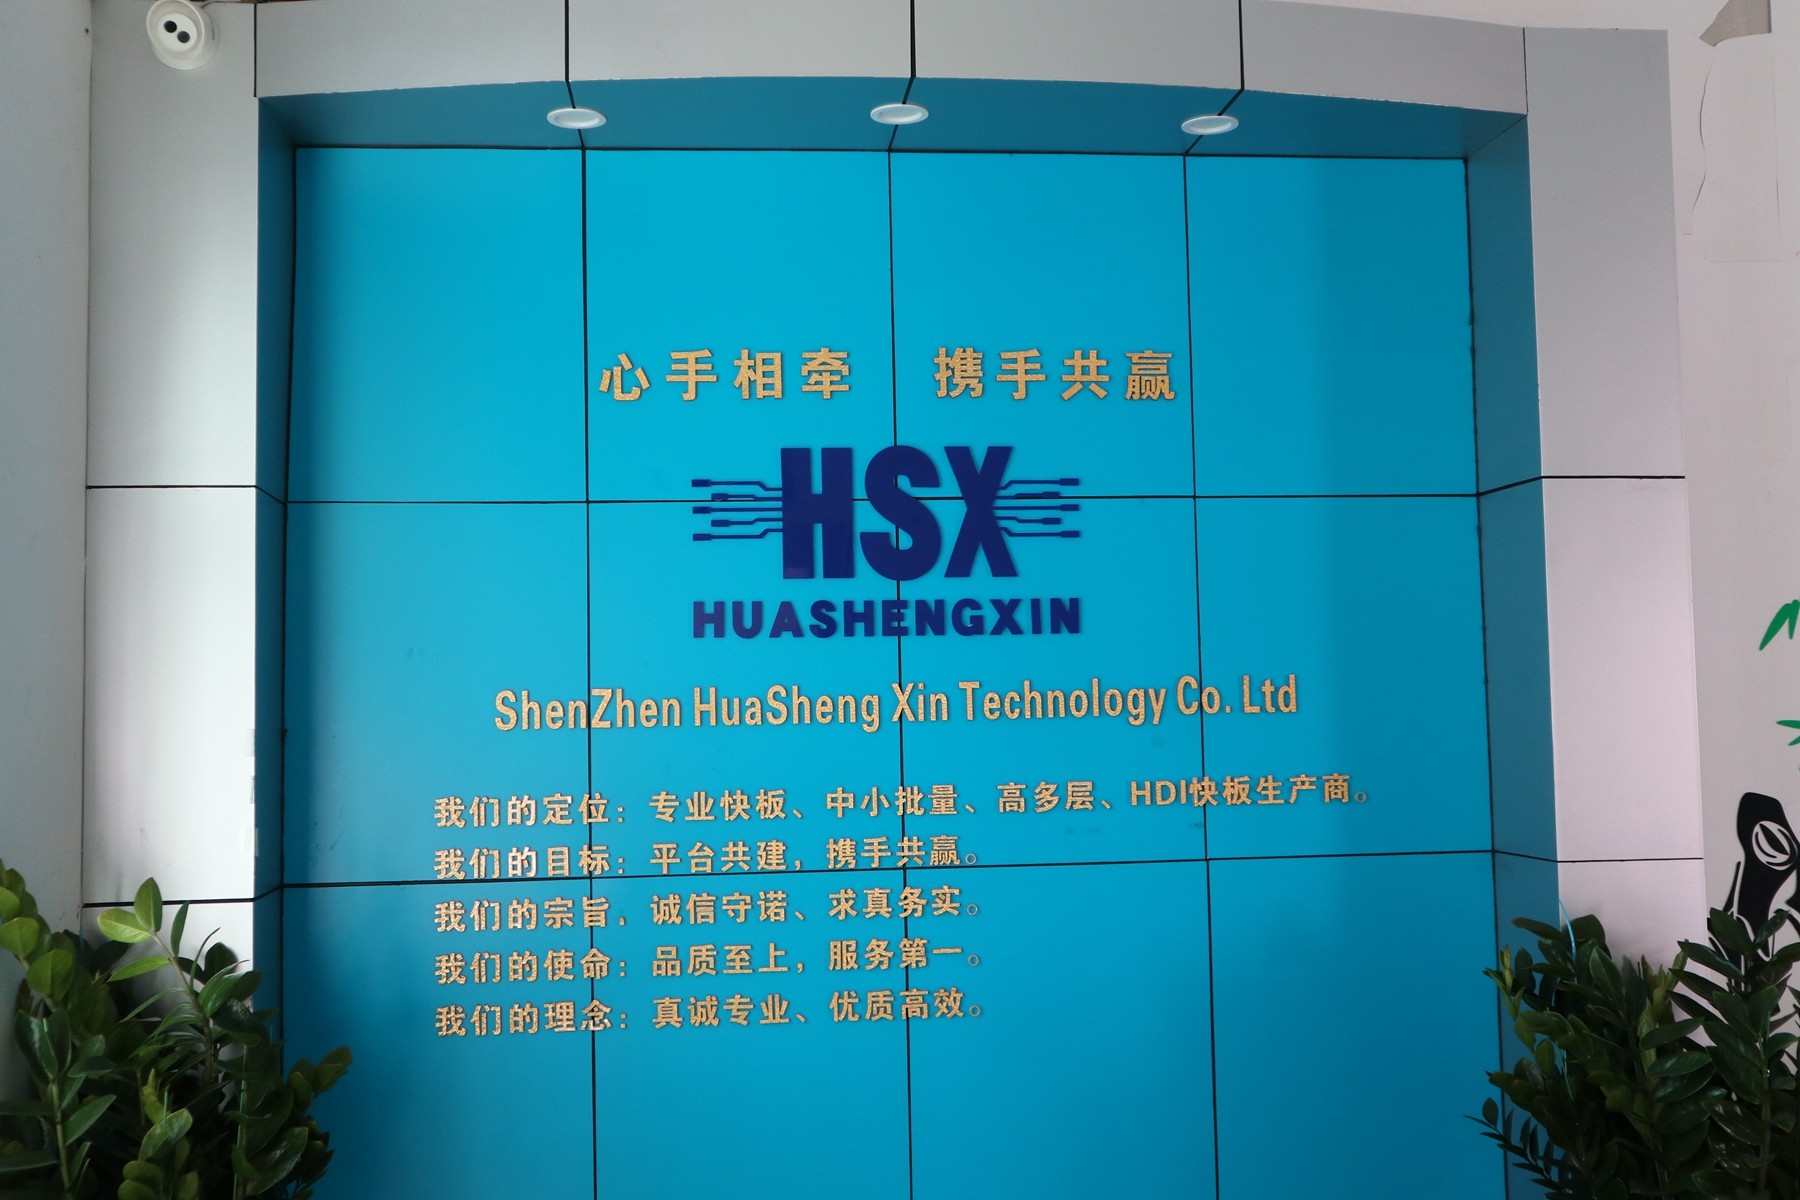 Huashengxin Circuit Limited